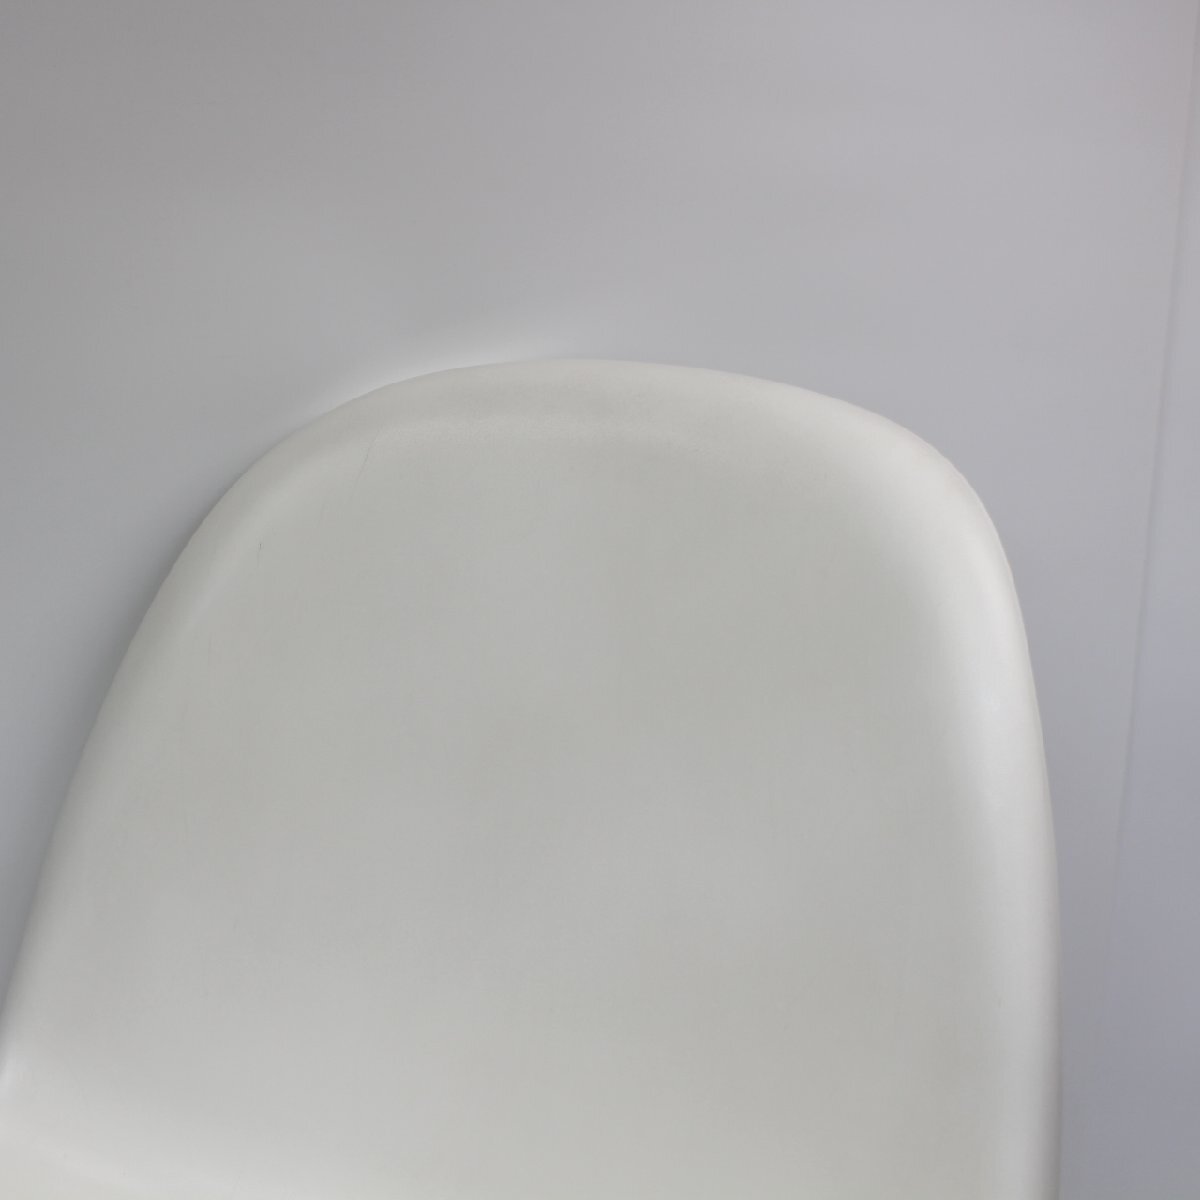 071)ヴィトラ vitra Panton Chair パントンチェア ホワイト 椅子 白_画像2